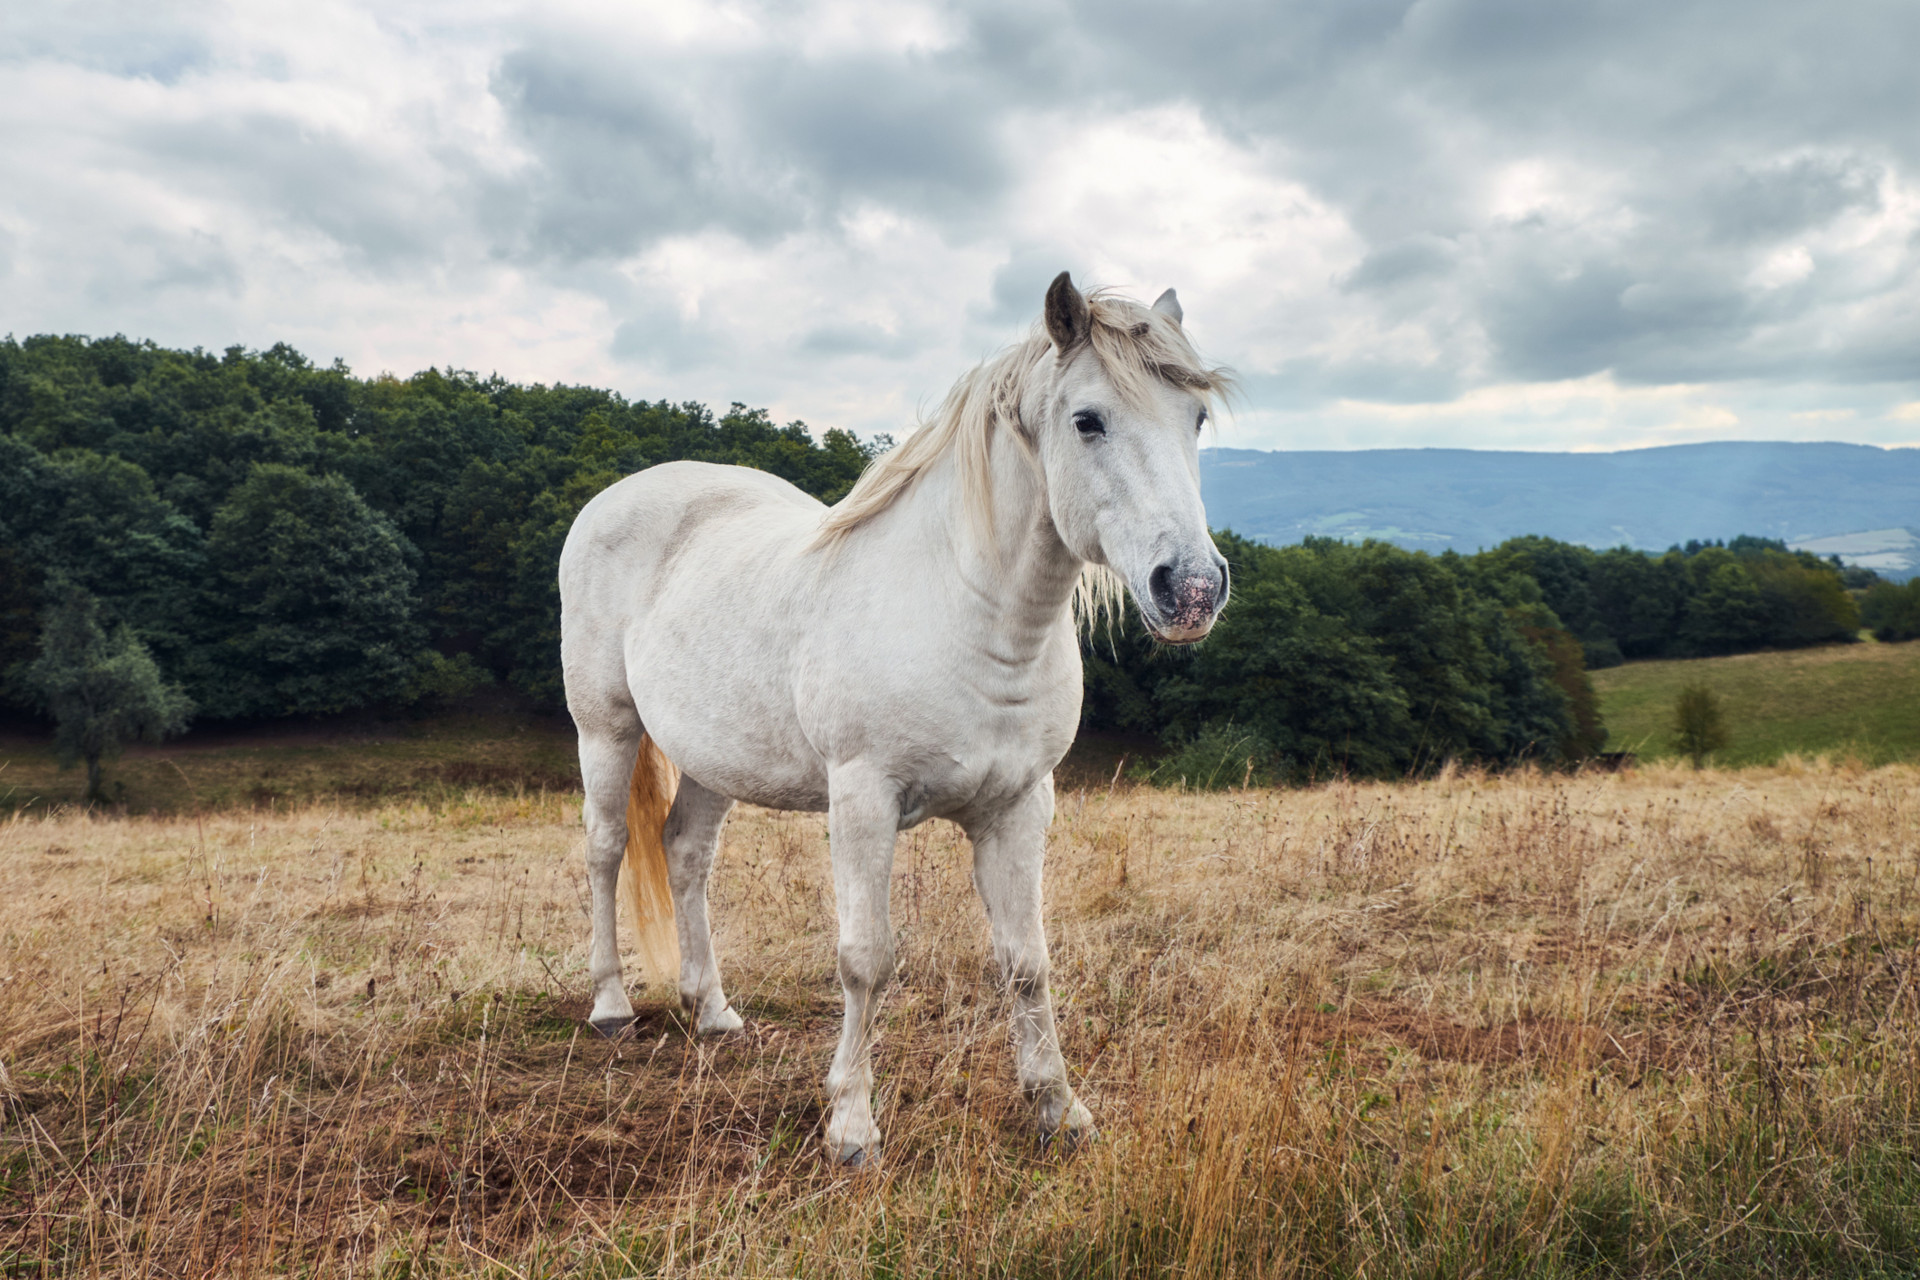 Deckengröße Pferd exakt bestimmen: Ein umfassender Leitfaden